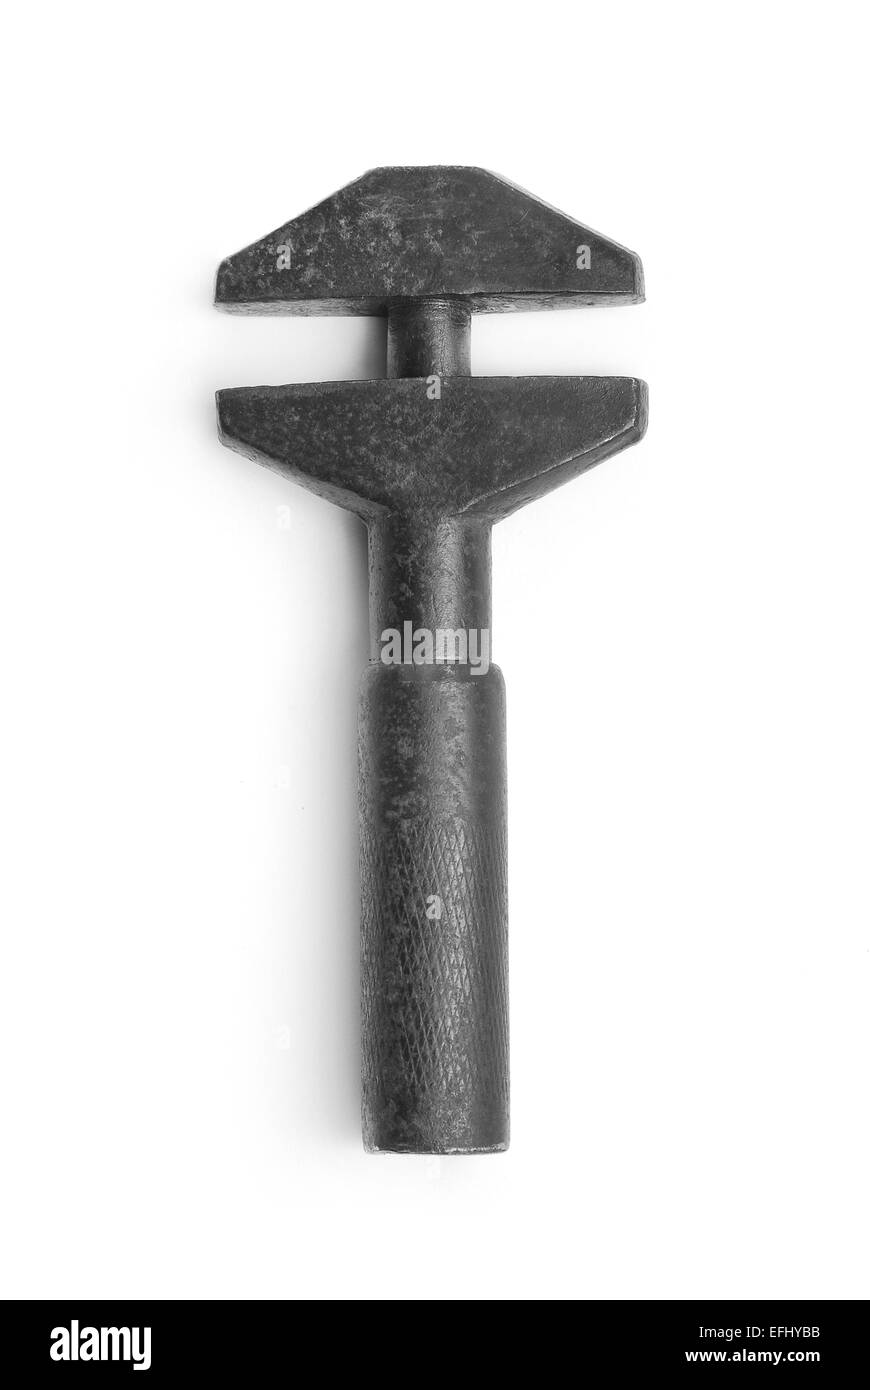 Ancienne clé à molette sur blanc Photo Stock - Alamy